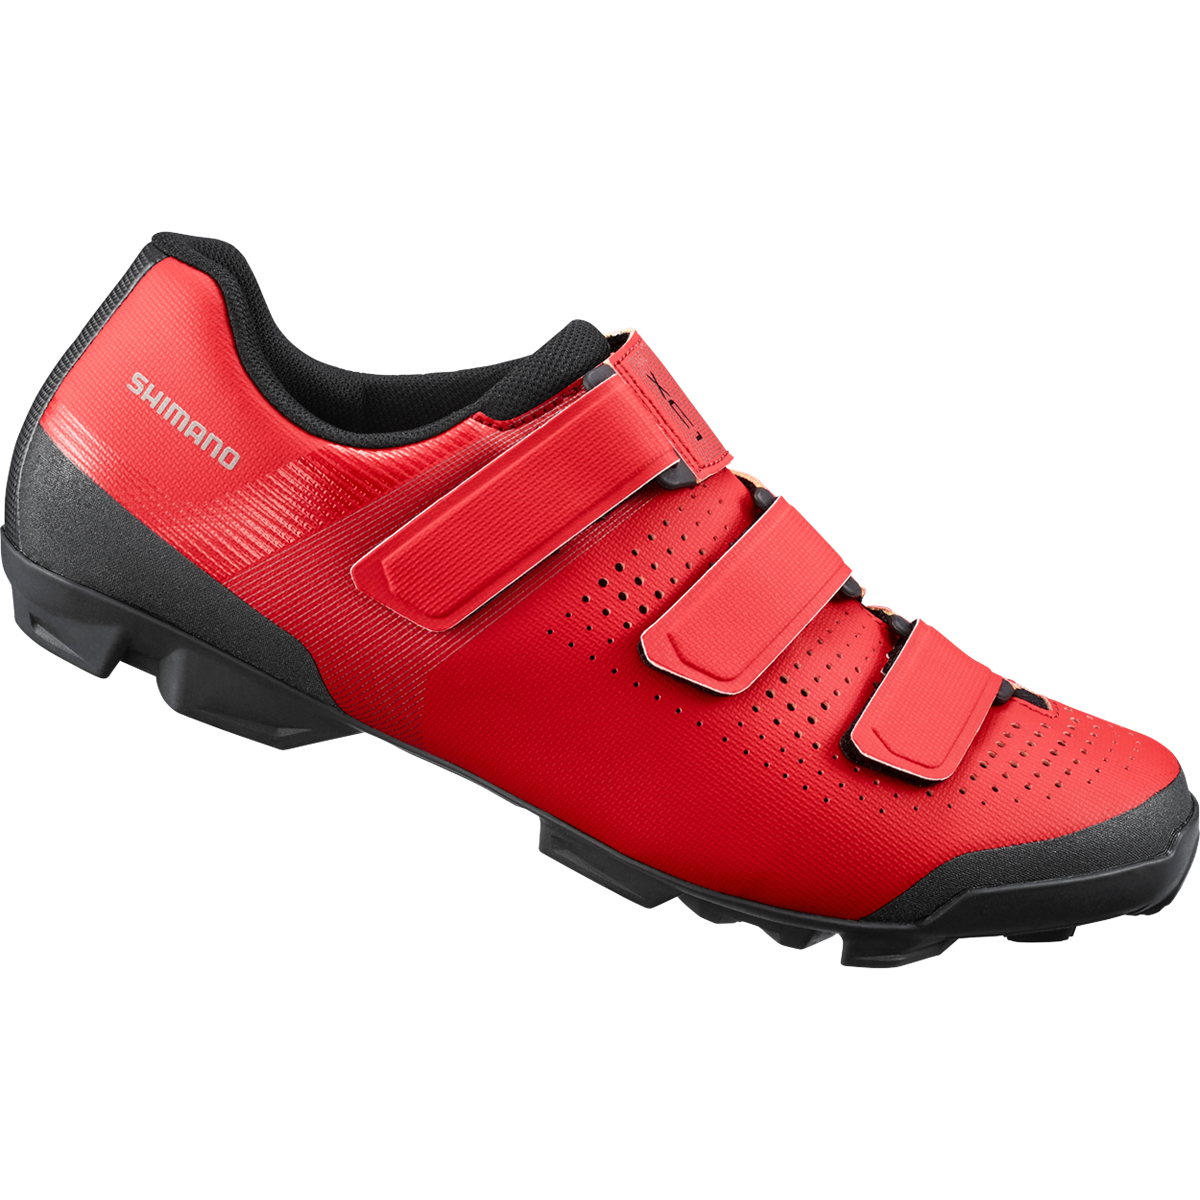 SHIMANO SH-XC100 red mtb shoes